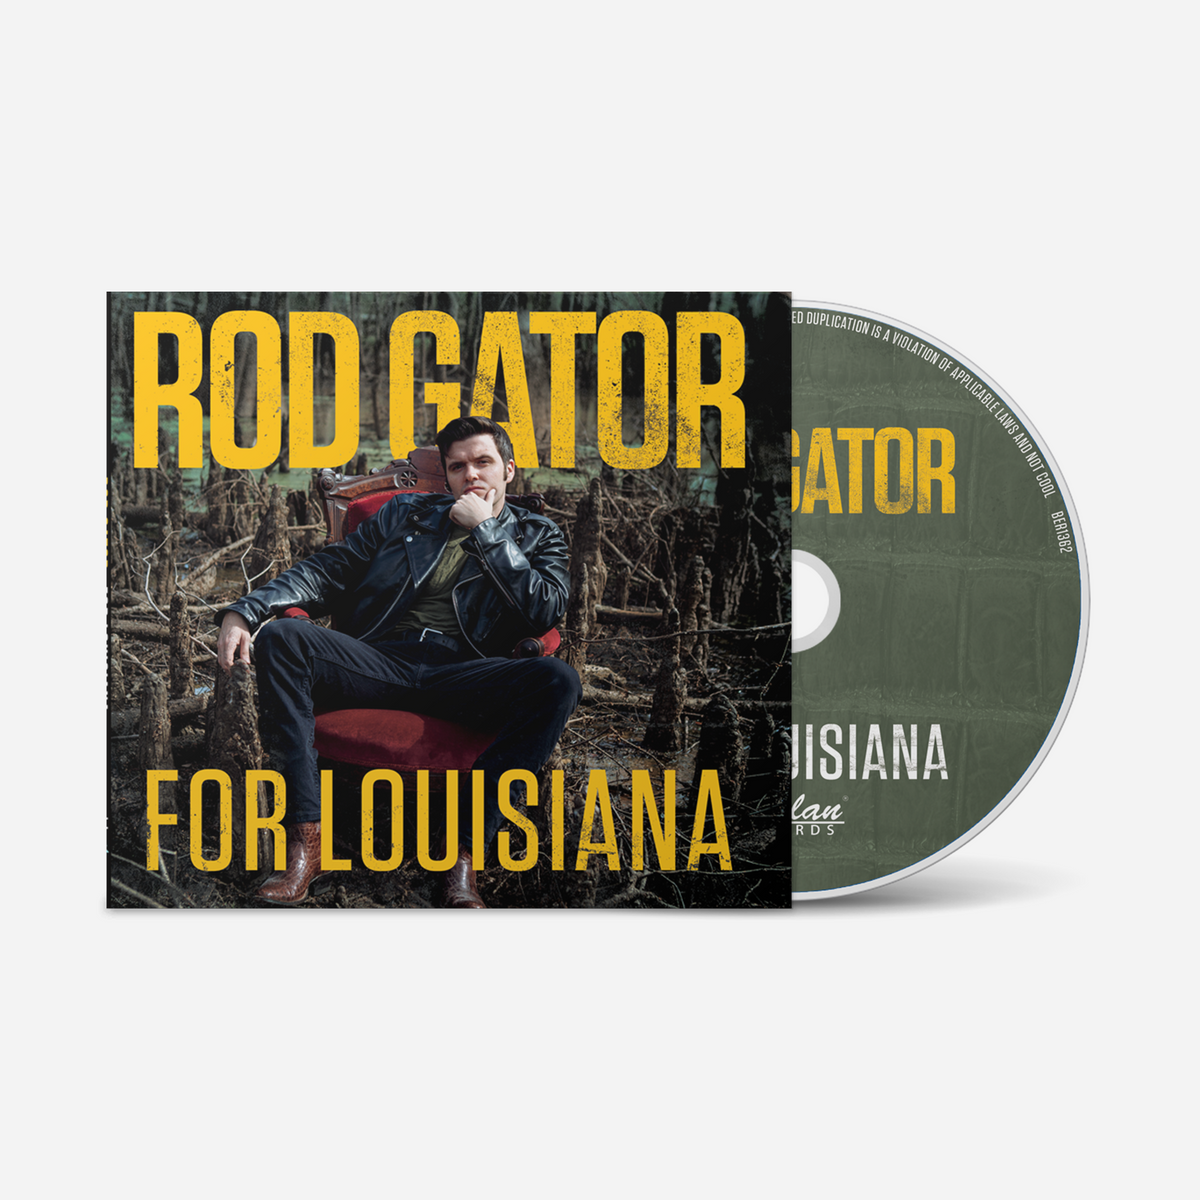 For Louisiana – CD